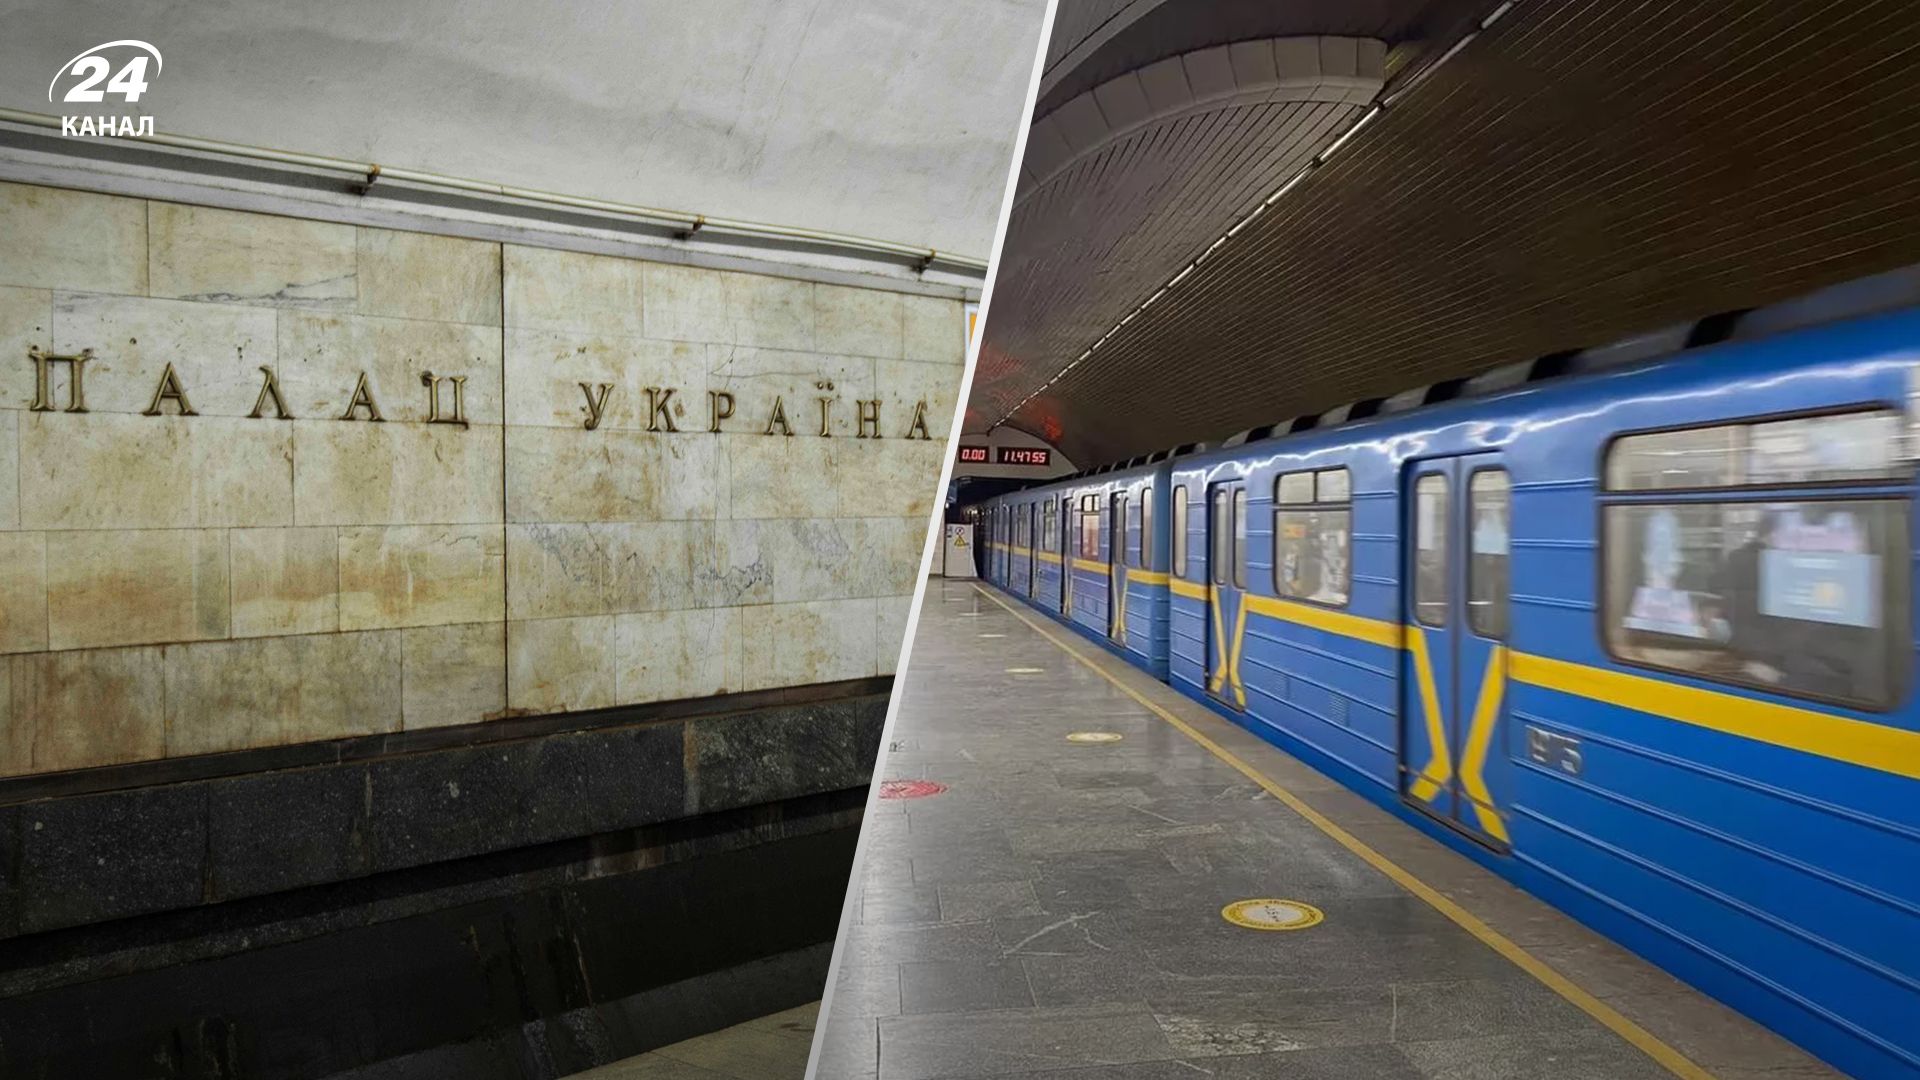 Очевидцы рассказали детали трагедии в киевском метро 31 мая